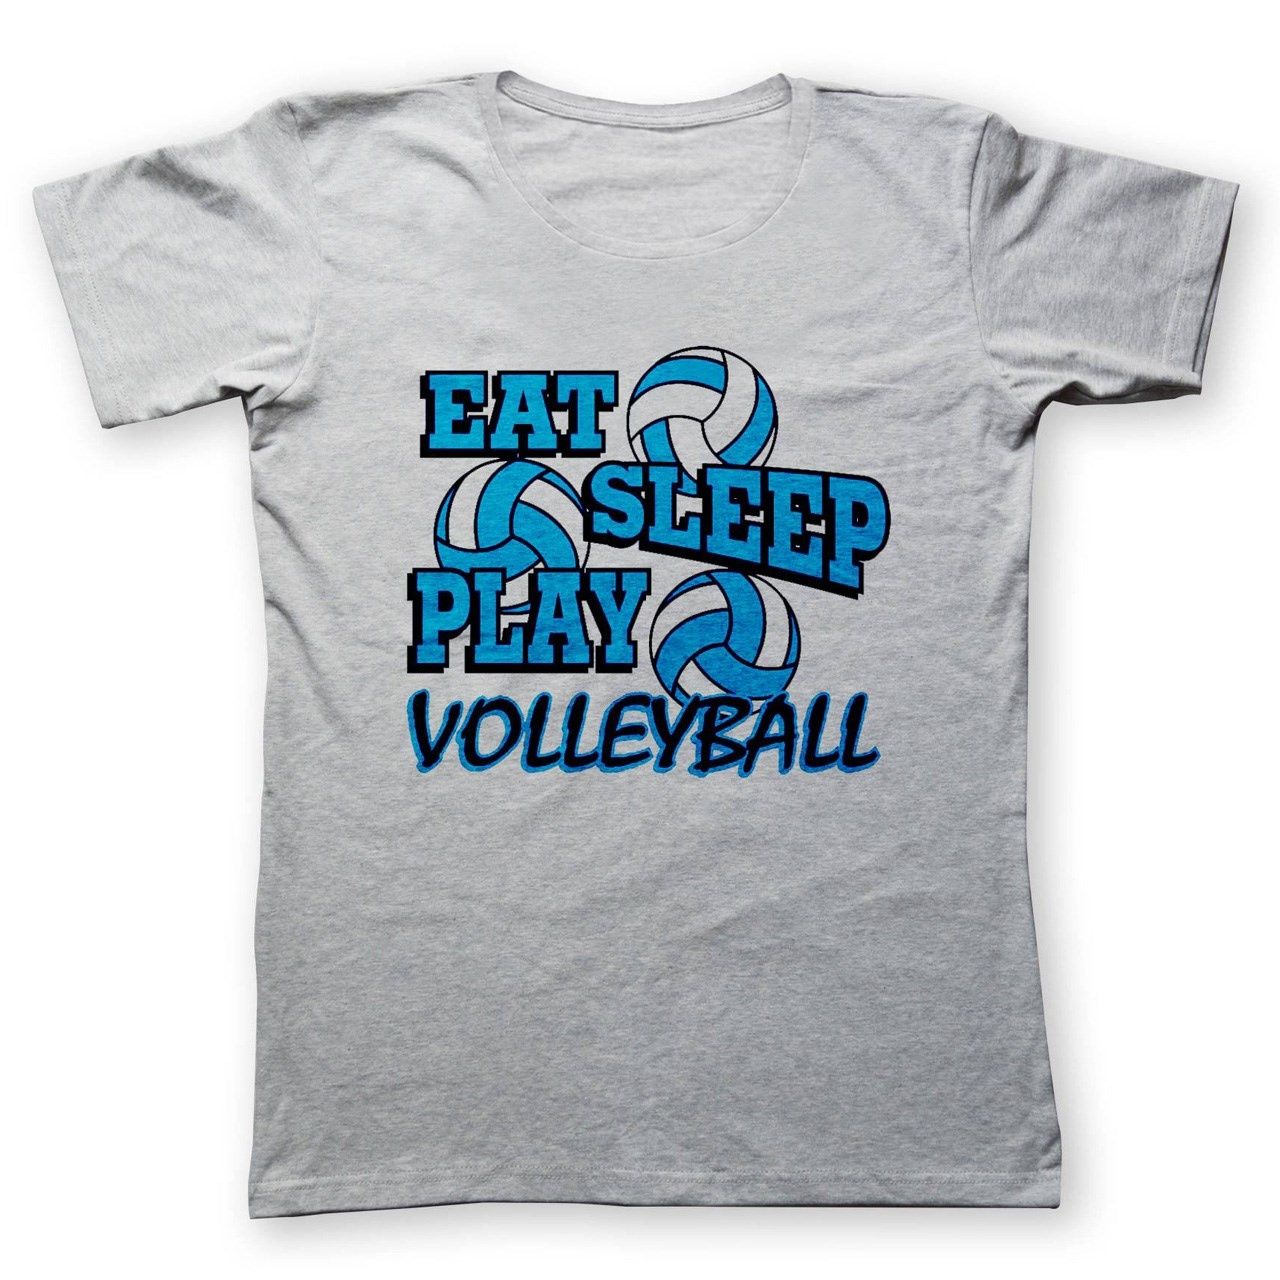 تی شرت به رسم طرح والیبالیست کد 241 -  - 1